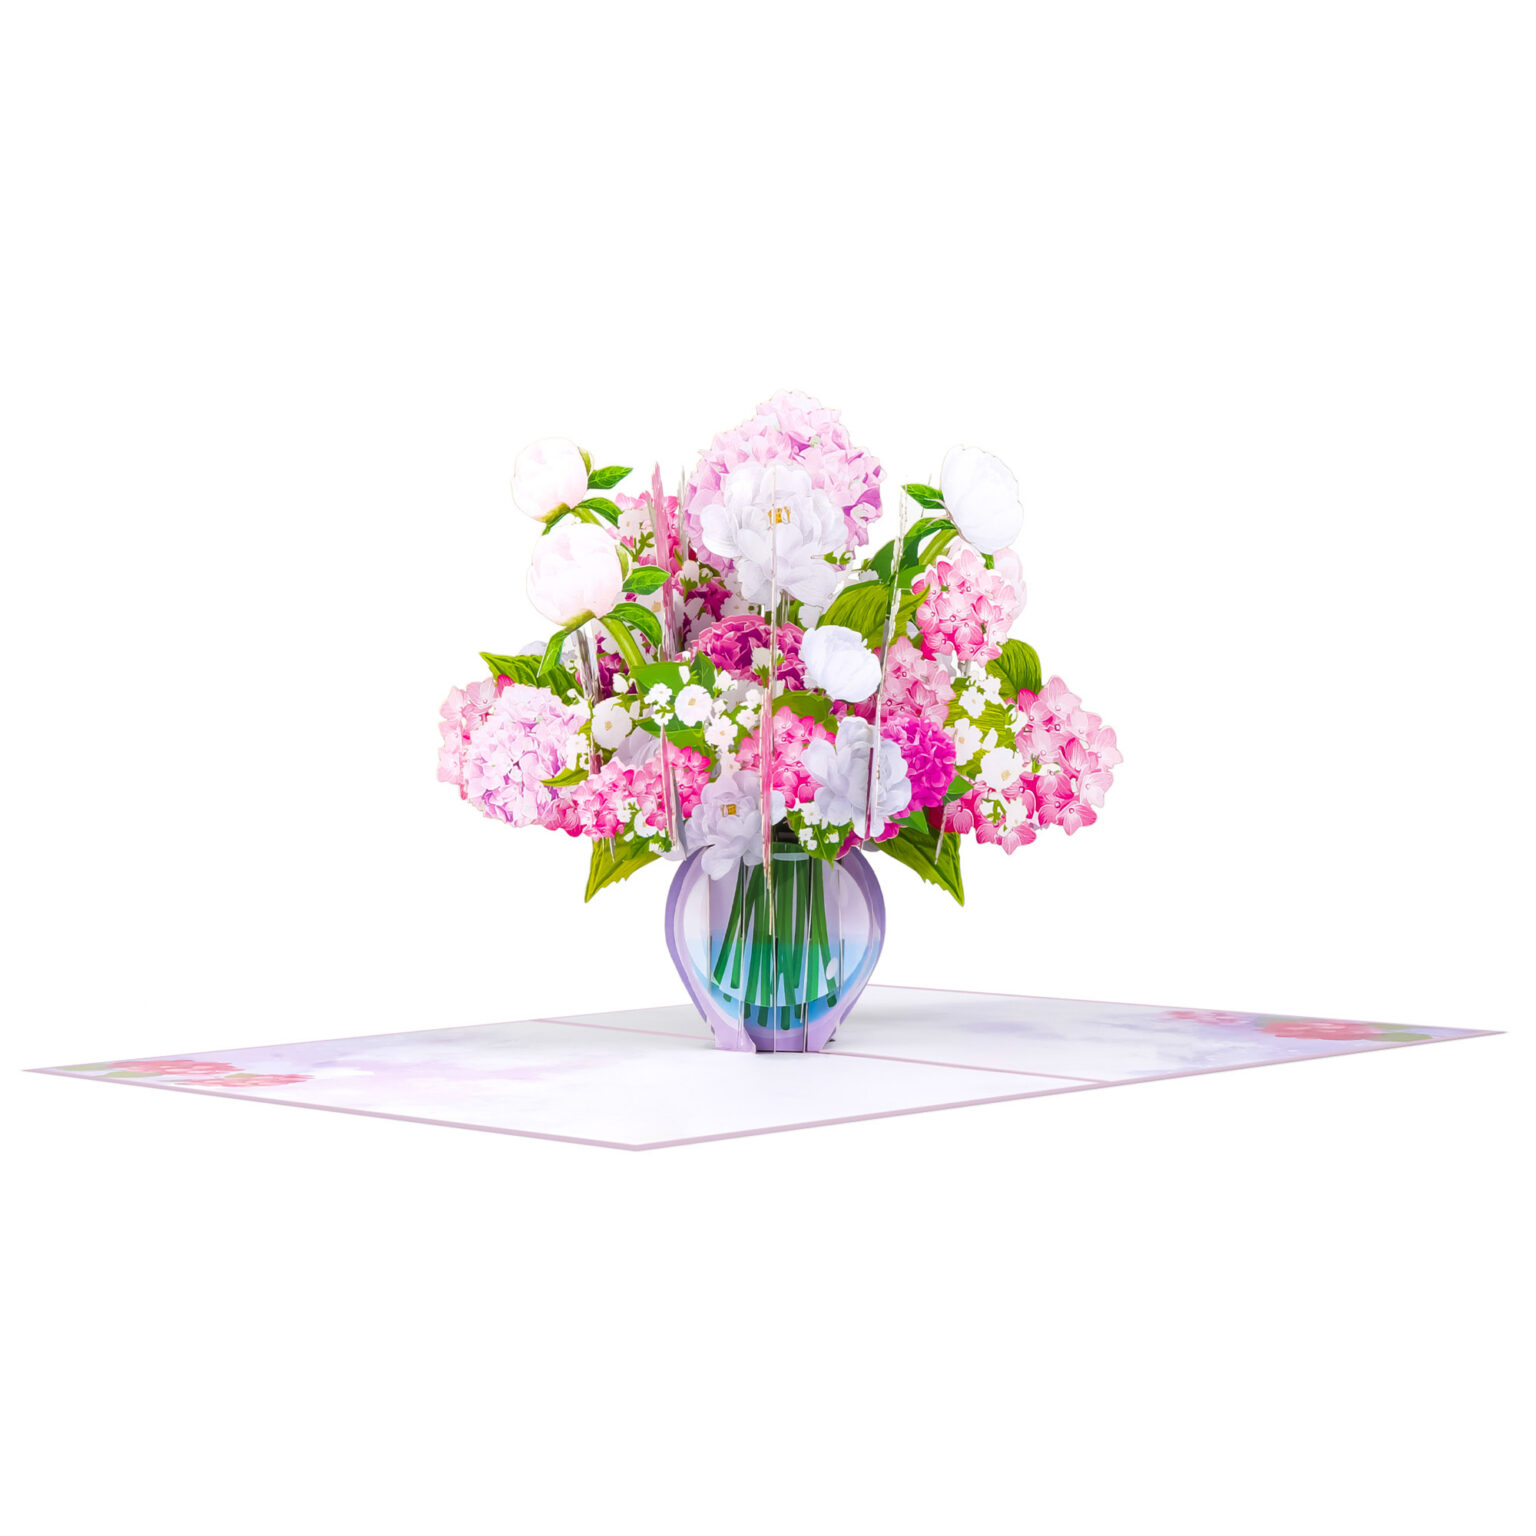 Pink Hydrangea Vase Pop Up Card